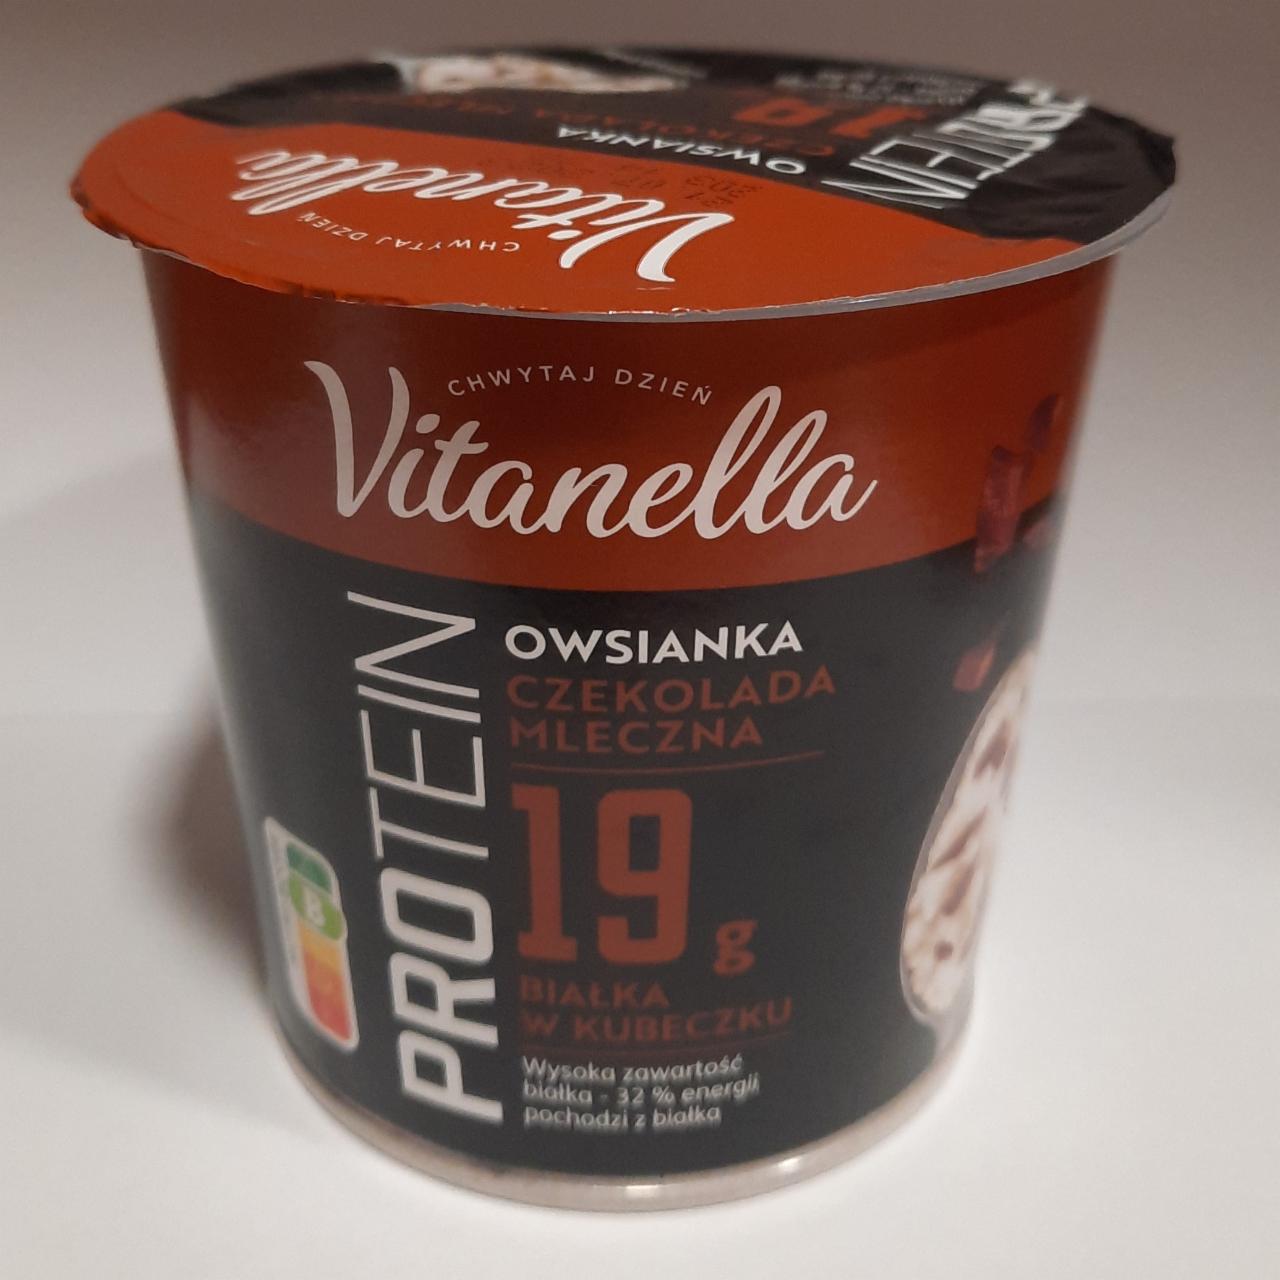 Zdjęcia - Protein 19g Owsianka czekoladą mleczną Vitanella